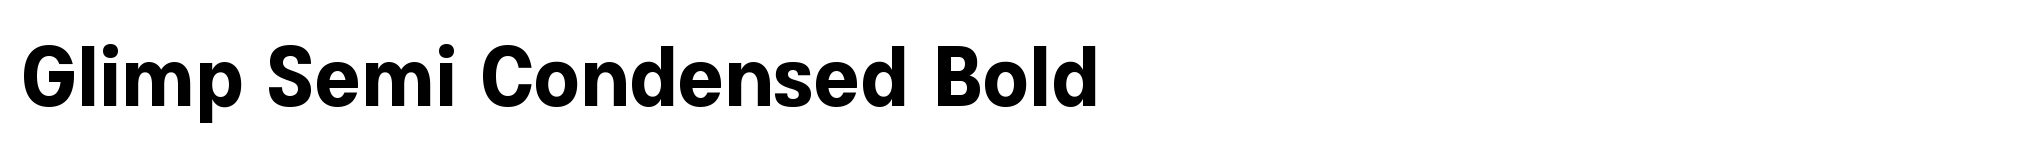 Glimp Semi Condensed Bold image